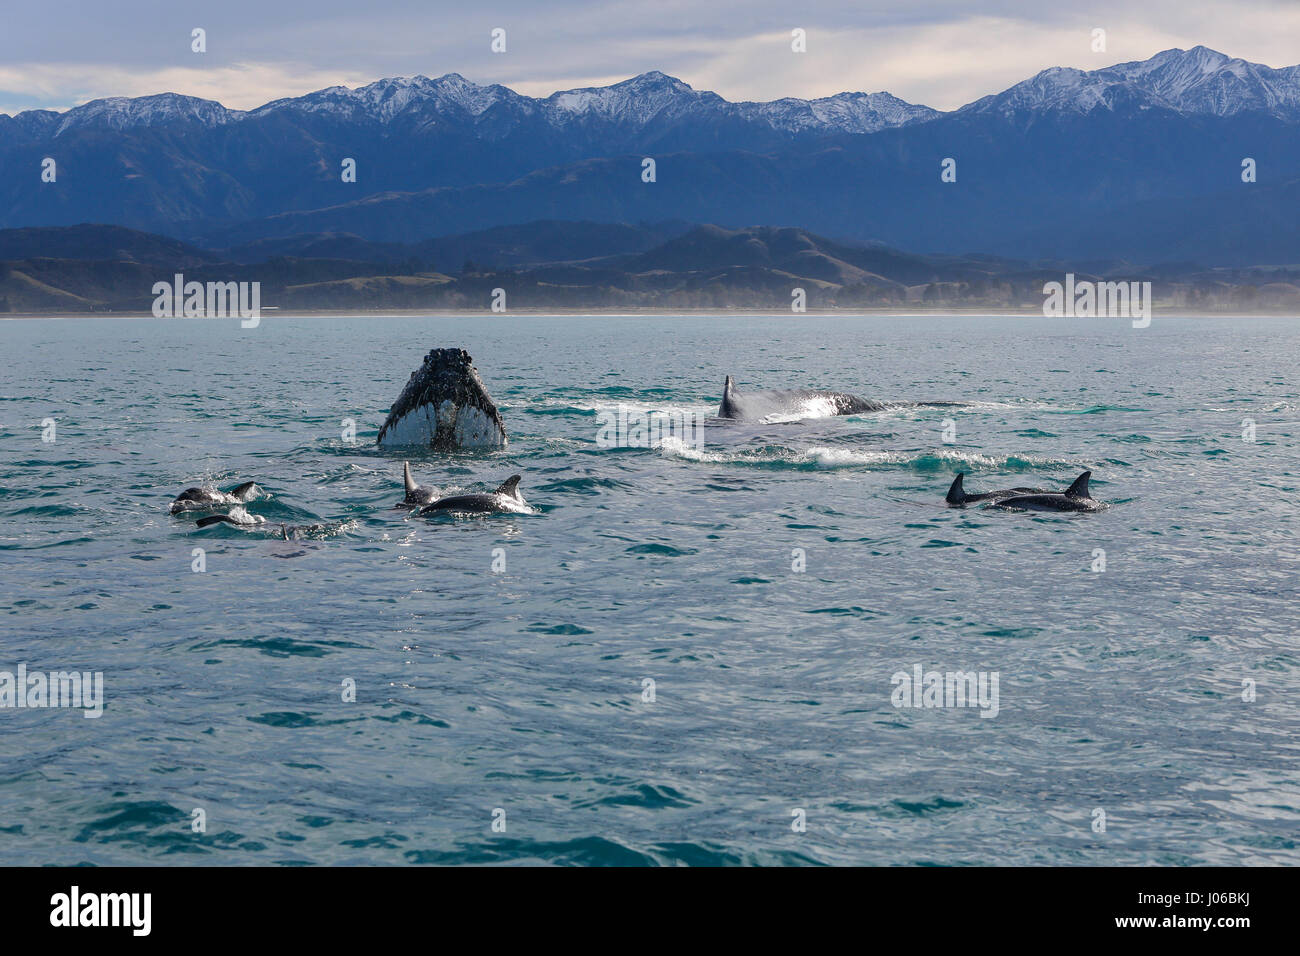 KAIKOURA Halbinsel, Neuseeland: die Wale und Delfine vermischen. ATEMBERAUBENDE Aufnahmen von frechen Delfine mit zwei 40-Fuß lange Buckelwale wurden gefangen genommen. Die herrlichen Bilder zeigen des super Pod von mehr als-hundert-und-fünfzig dusky Delphine unterbrechen die beiden Wale, wie sie ihren Weg zu den wärmeren Gewässern zu züchten gemacht. Die Bilder zeigen die Delphine setzen auf eine Leistung für eine Gruppe von fassungslos Touristen auf eine Whale-watching Ausflug mit dem Boot. Nicht um die sportliche Delphine heraus erfolgen, durchgeführt die Buckelwale eine Reihe von synchronisierten Drehungen und Wendungen im Blick Stockfoto